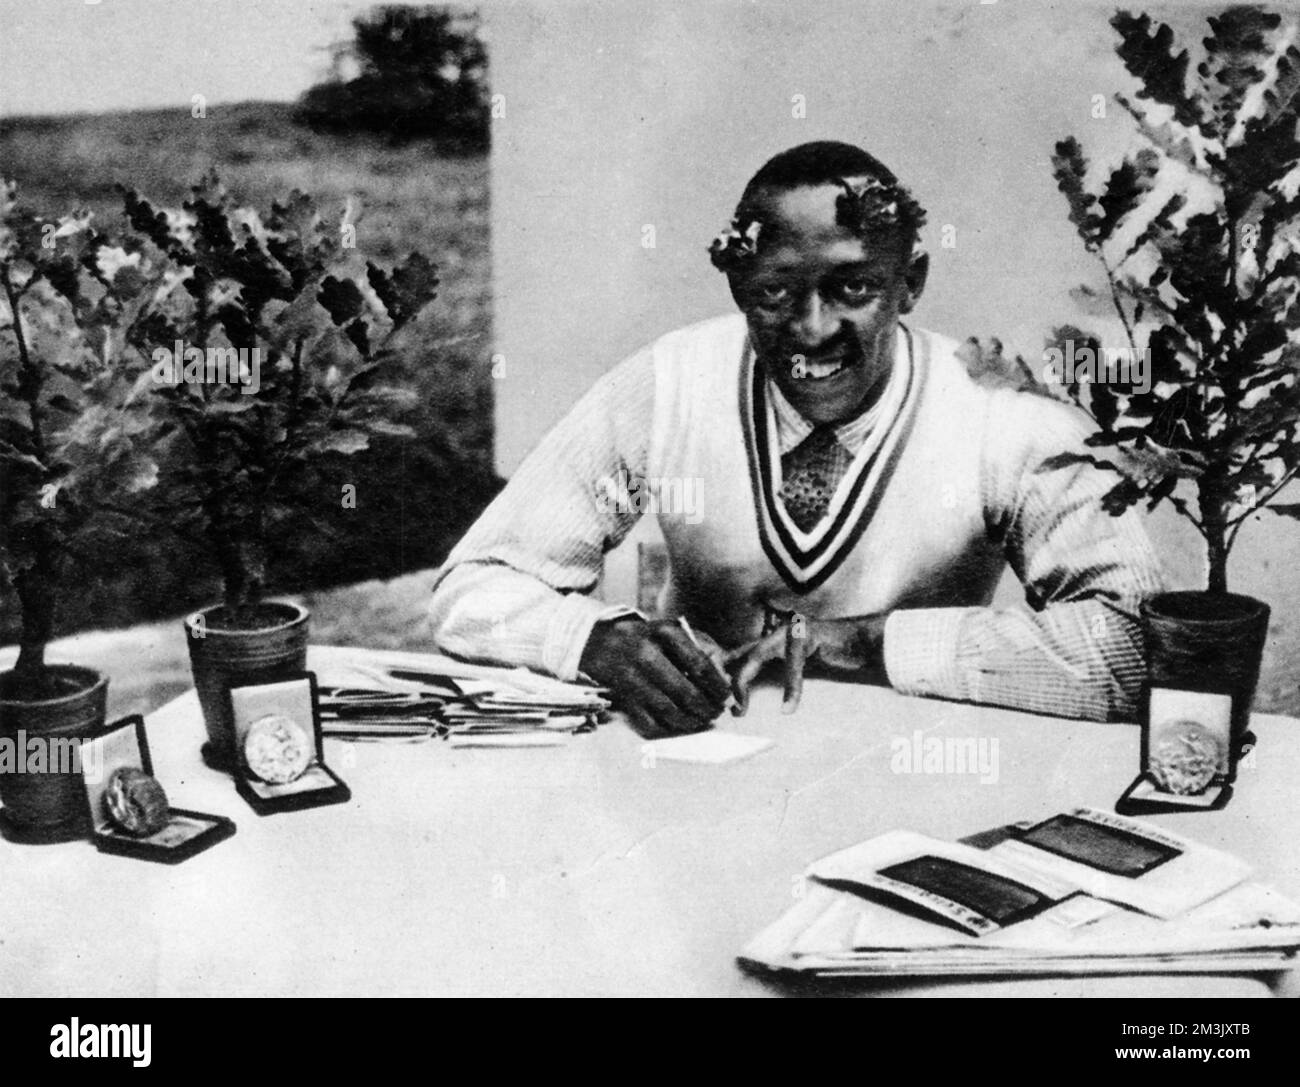 Jesse James Cleveland Owens (1913 - 1980), atleta statunitense, nella foto con le sue querce olimpiche e medaglie. Owens ha vinto quattro medaglie d'oro alle Olimpiadi di Berlino del 1936: I 100 metri, i 200 metri, il lungo salto e la staffetta 4x100 metri. 1936 Foto Stock